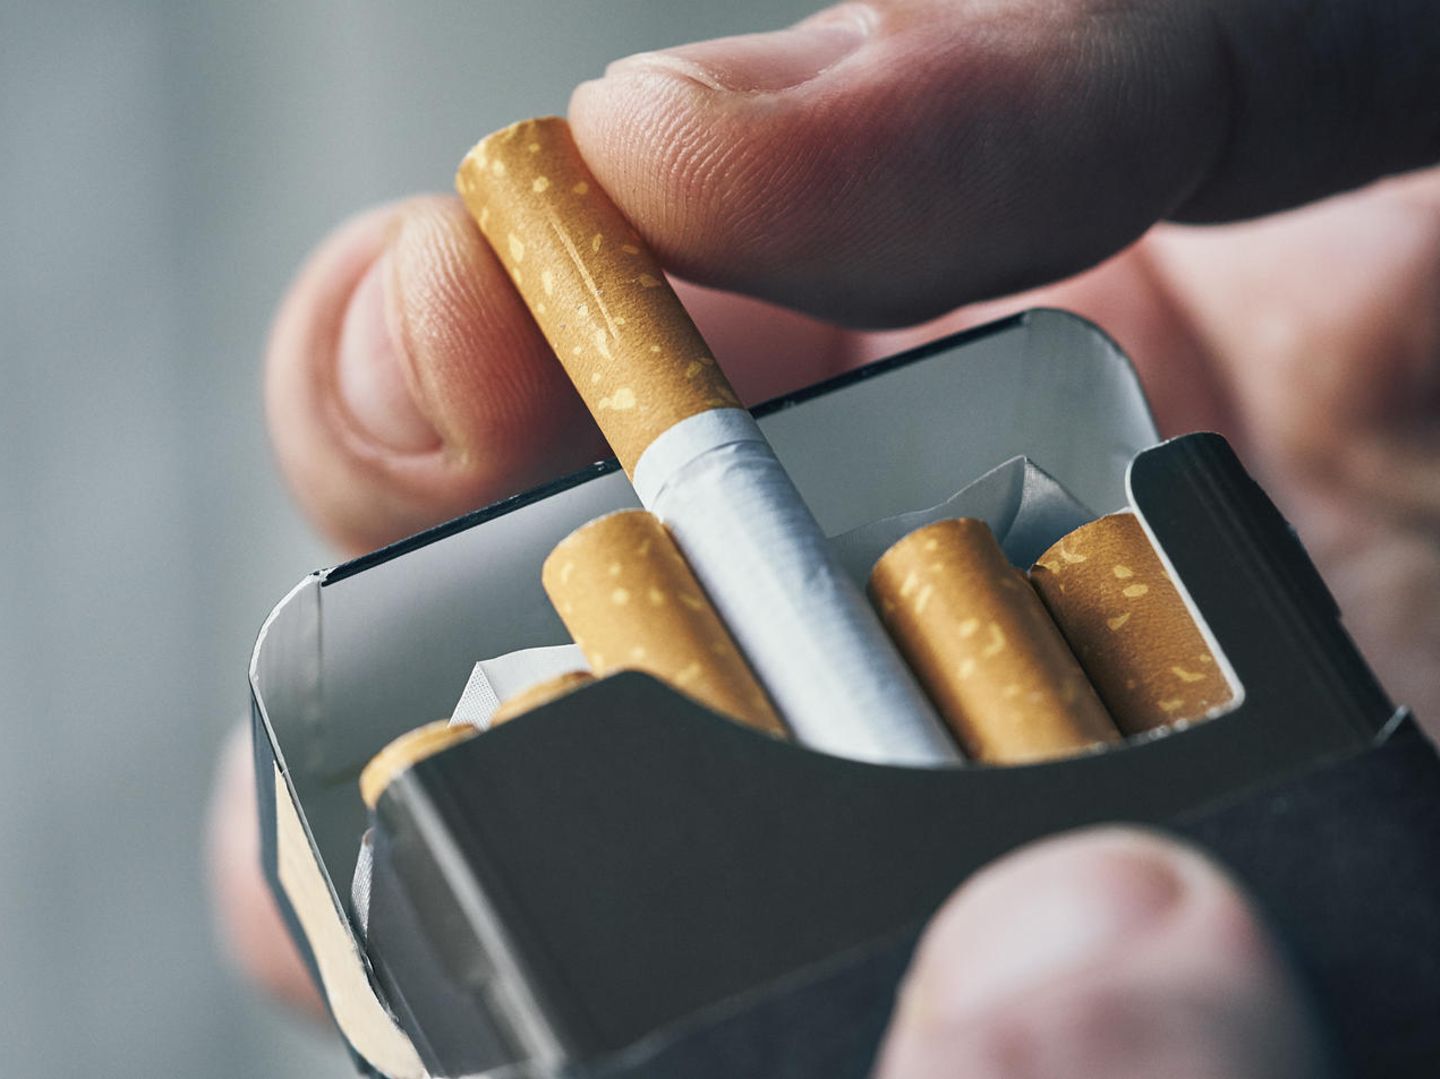 Gesetzgebung zur Altersbeschränkung für Tabakwaren in Deutschland